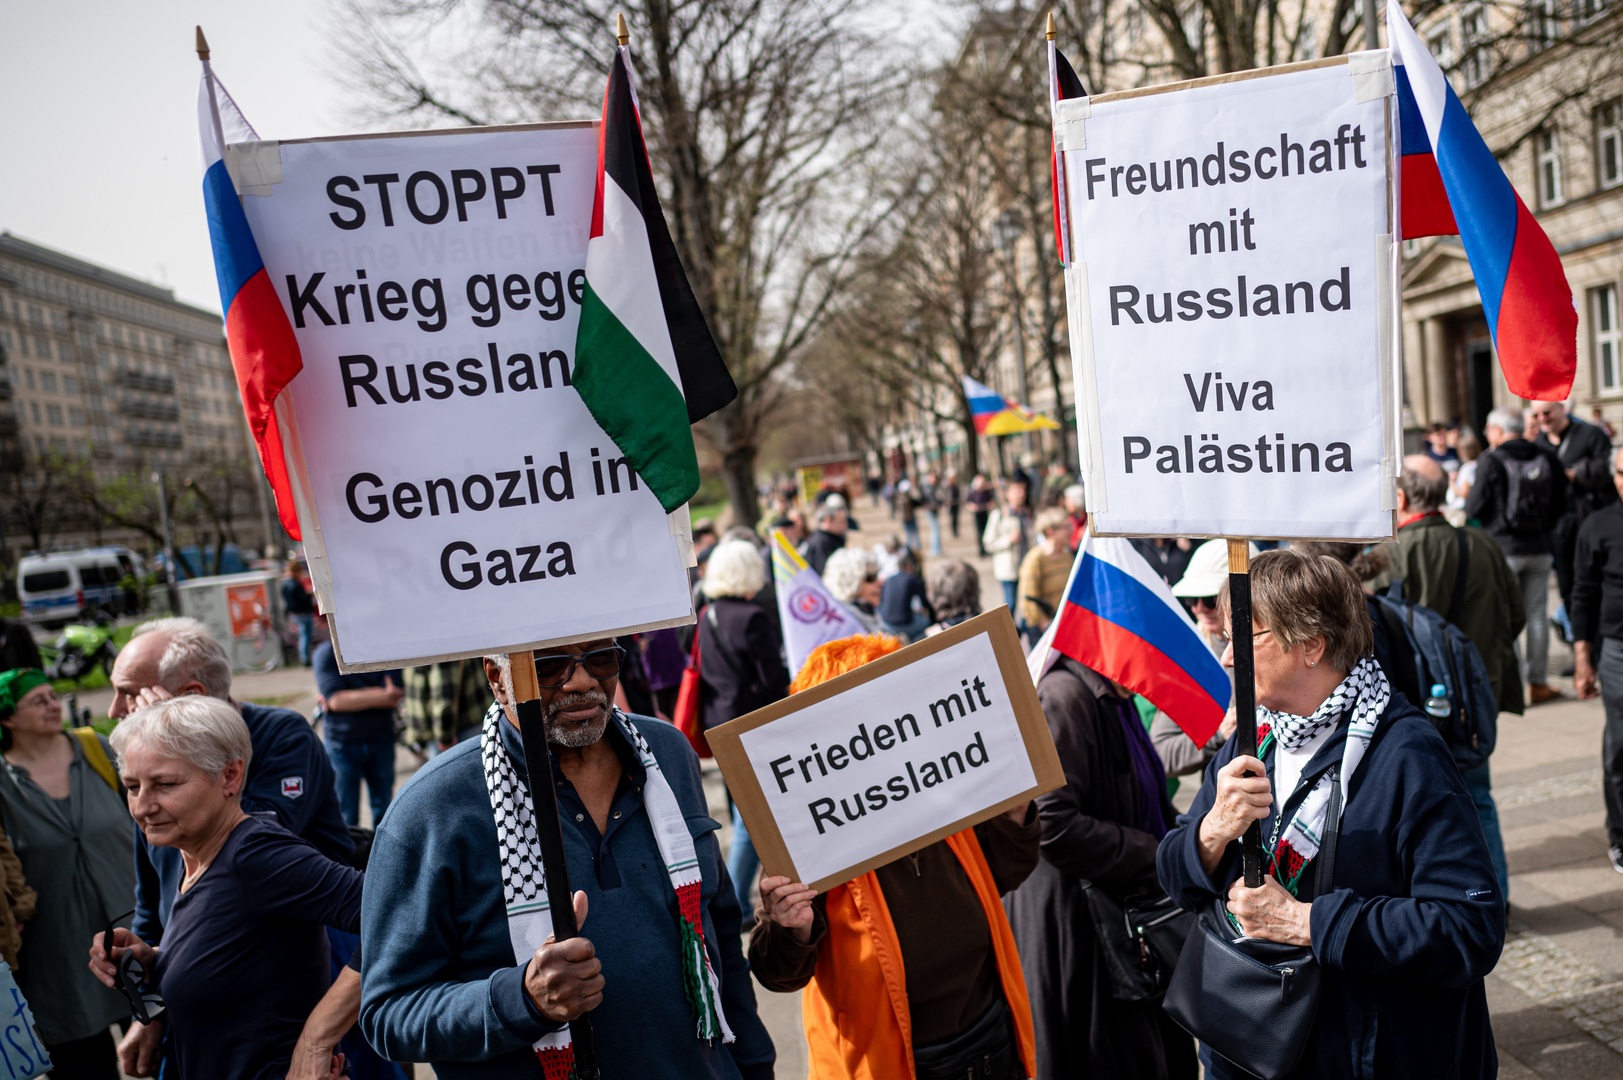 مظاهرة من أجل مفاوضات سلام حول النزاع الأوكراني في برلين (فيديو)